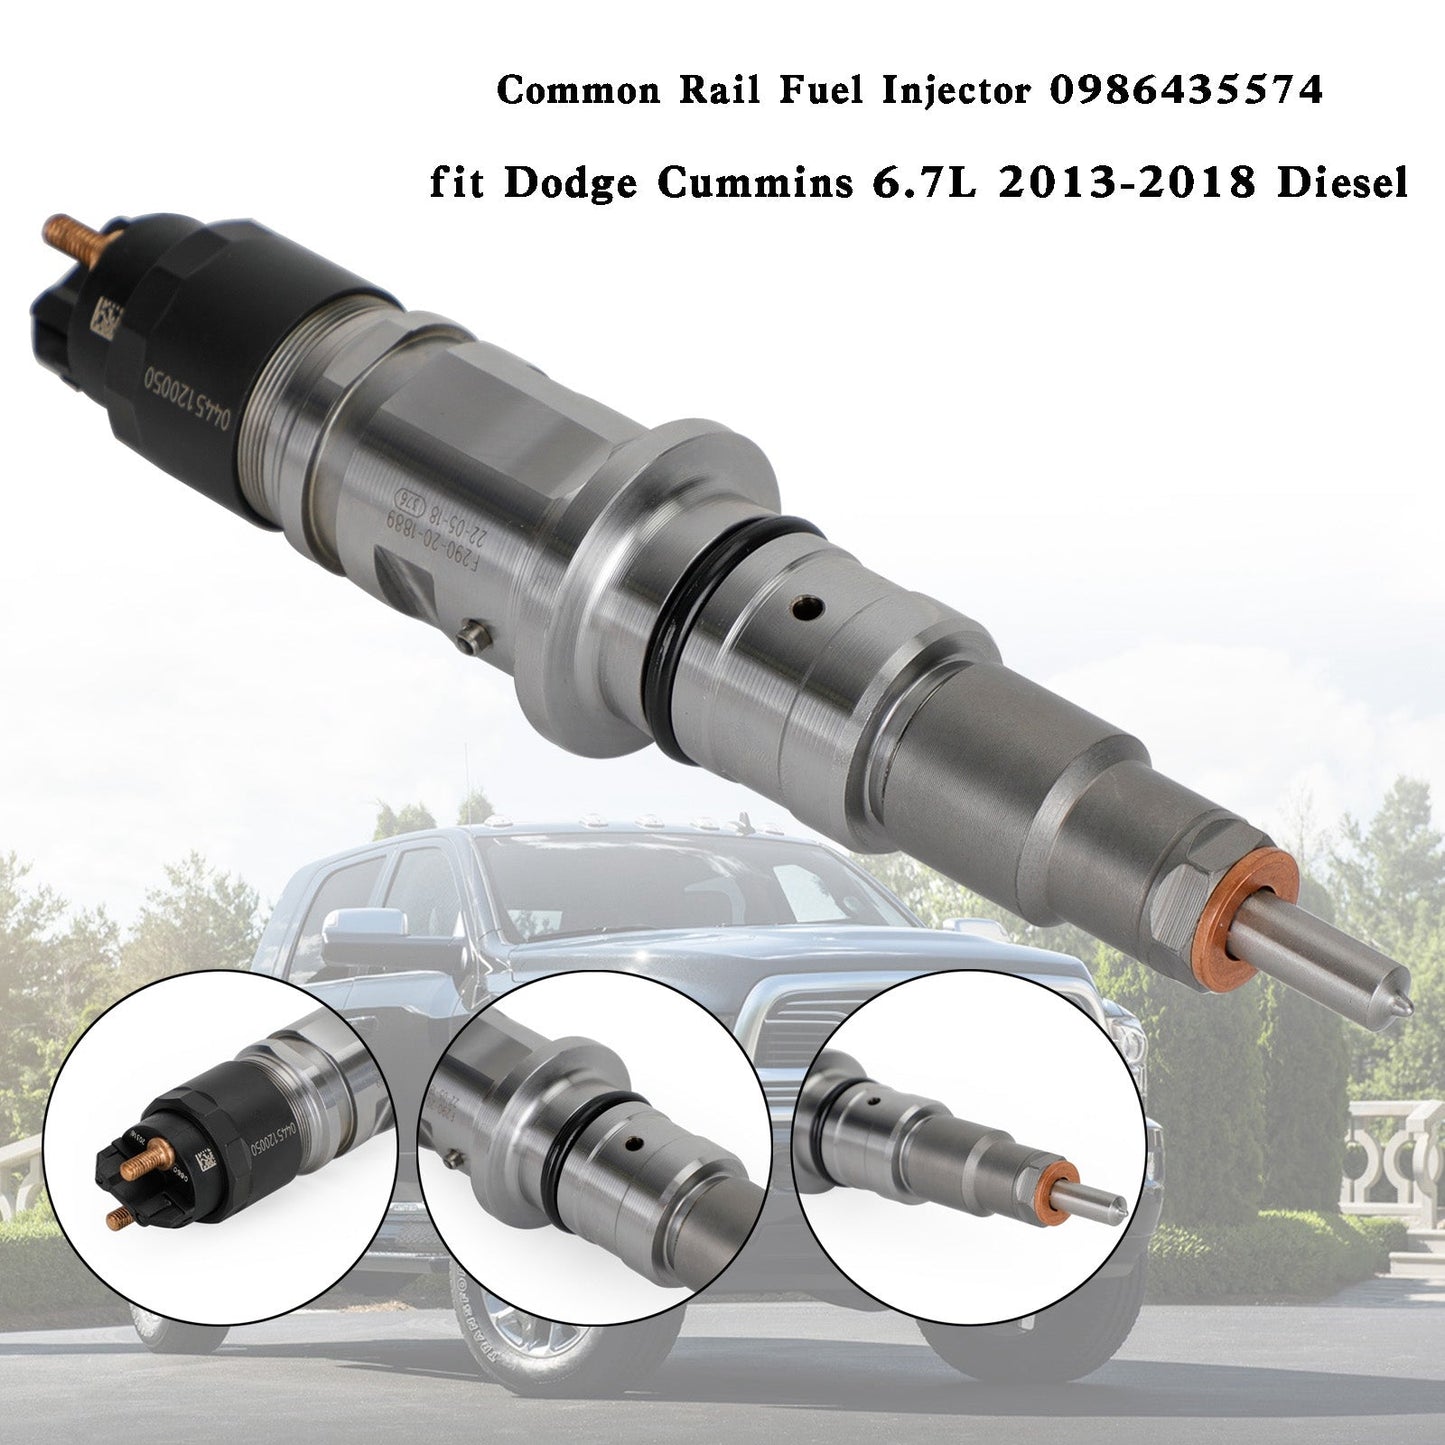 Common Rail Fuel Injector 0986435574 fit Dodge Cummins 6.7L 2013-2018 Diesel